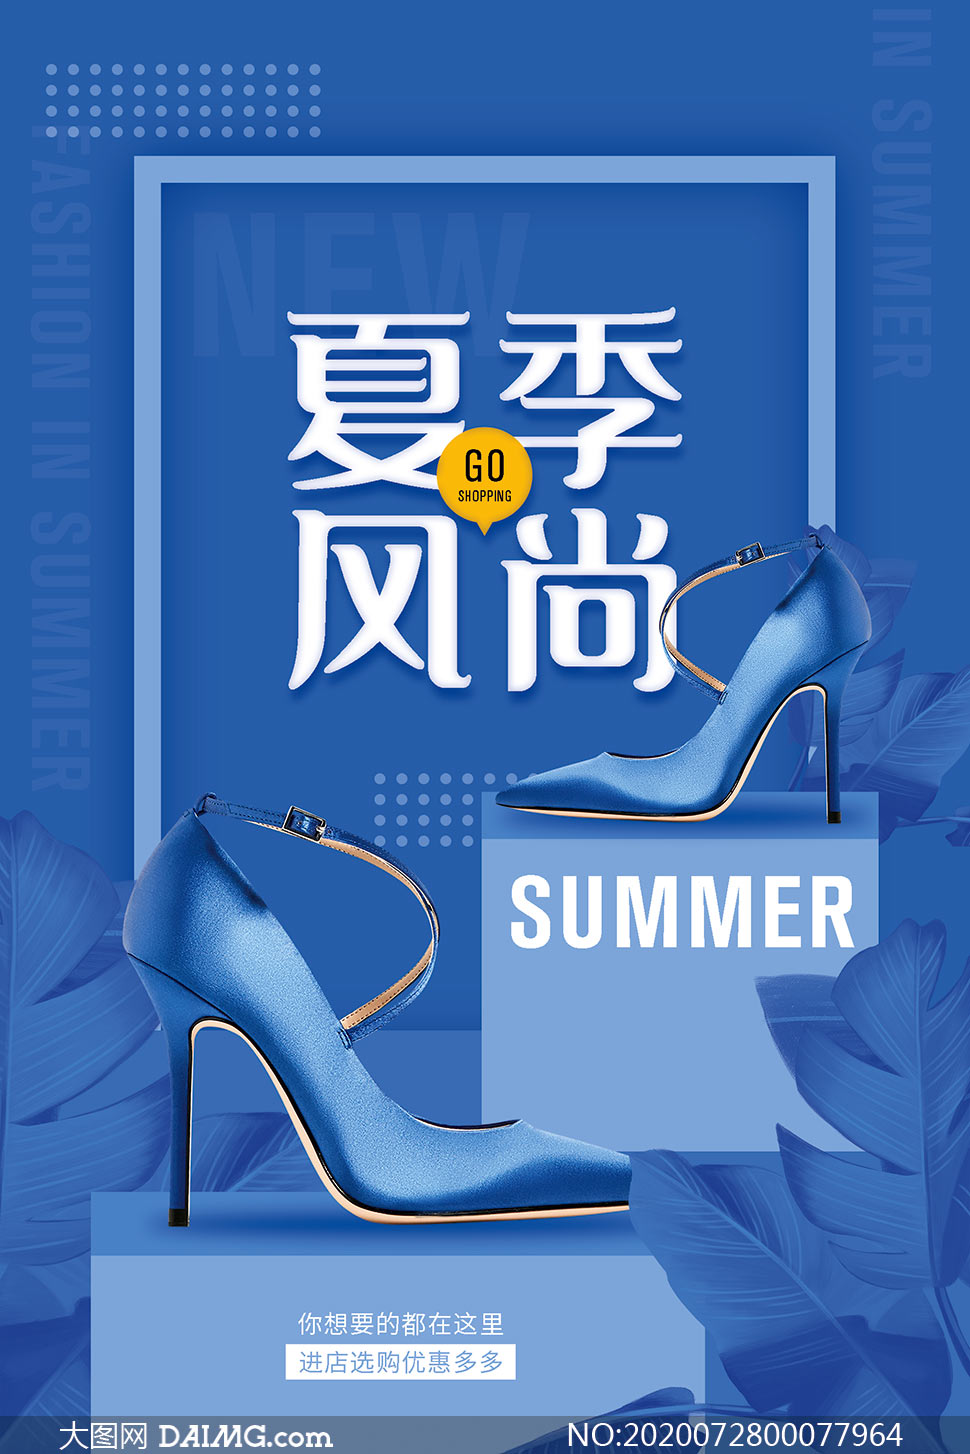 夏季女鞋促销海报设计模板psd素材